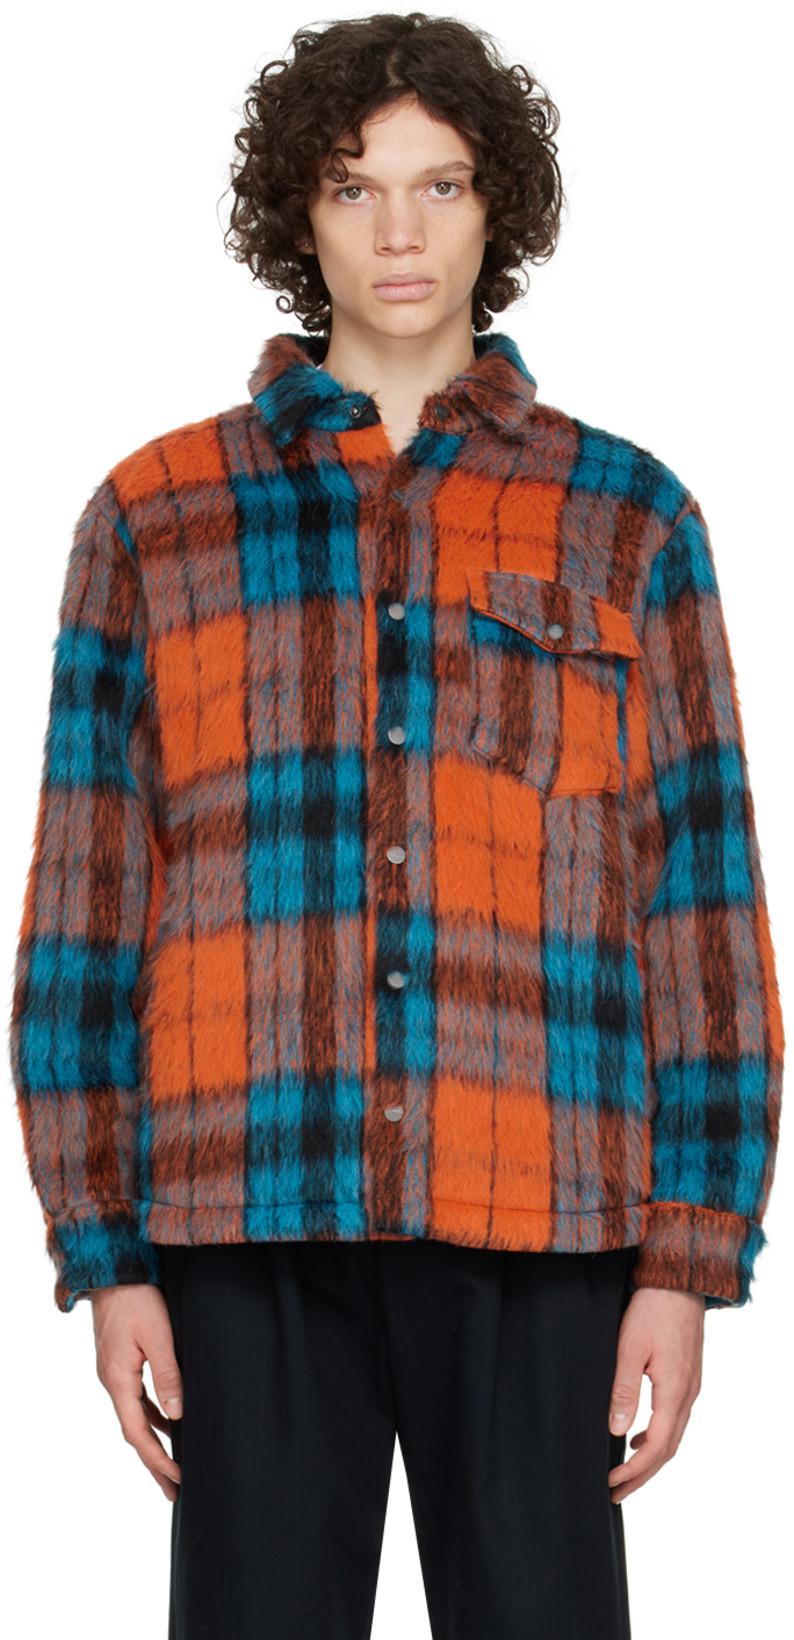 Blue & Orange Check Jacket by AGR